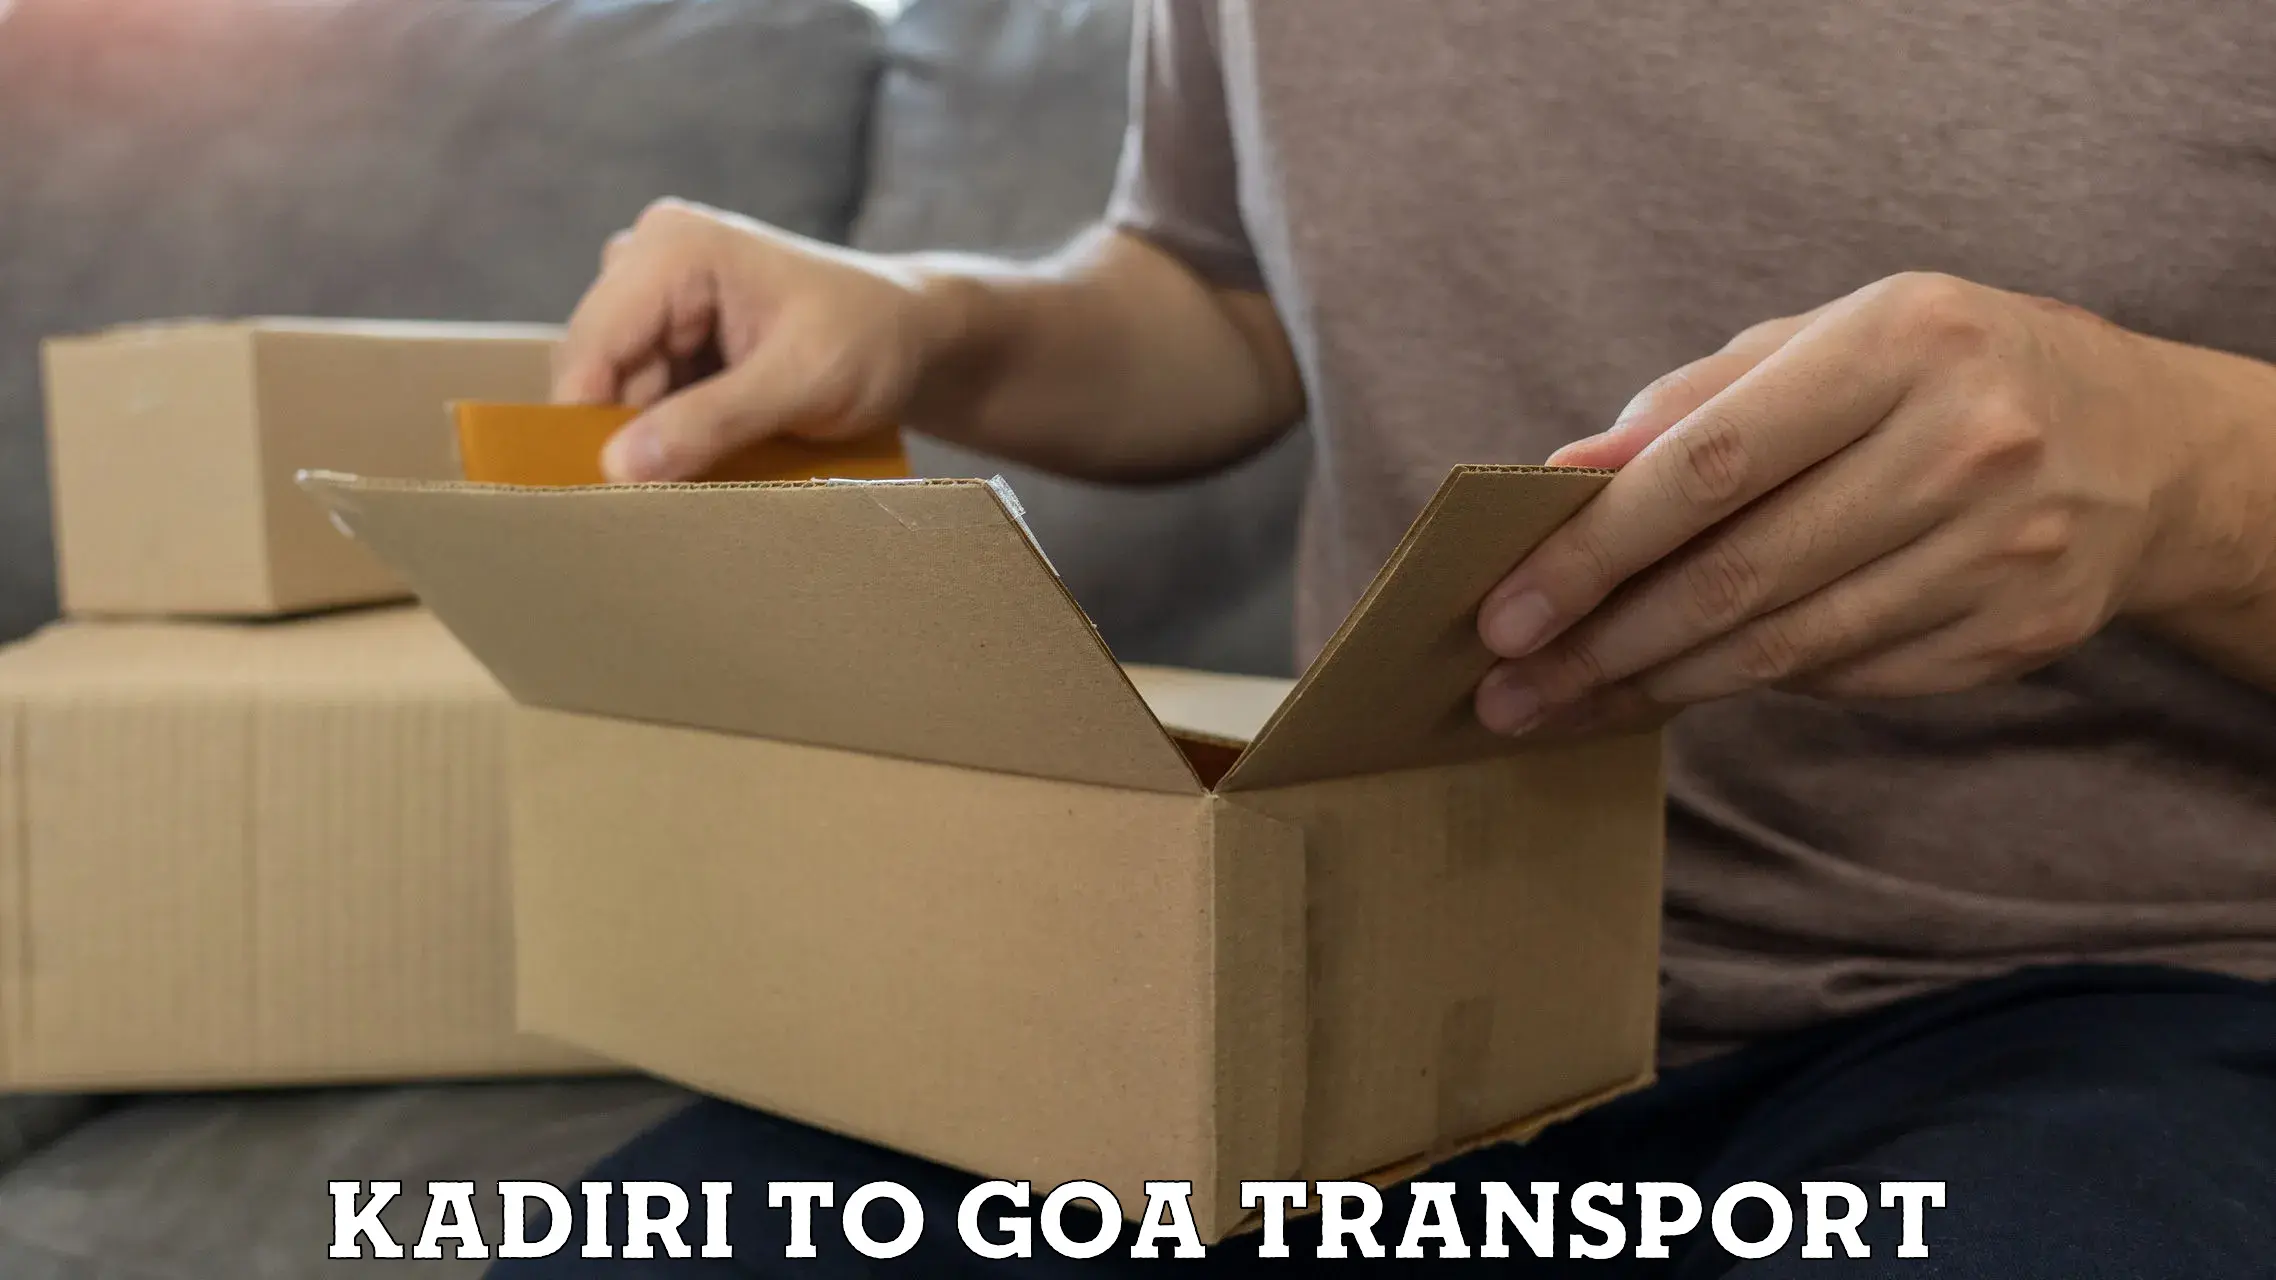 Scooty transport charges Kadiri to Goa University